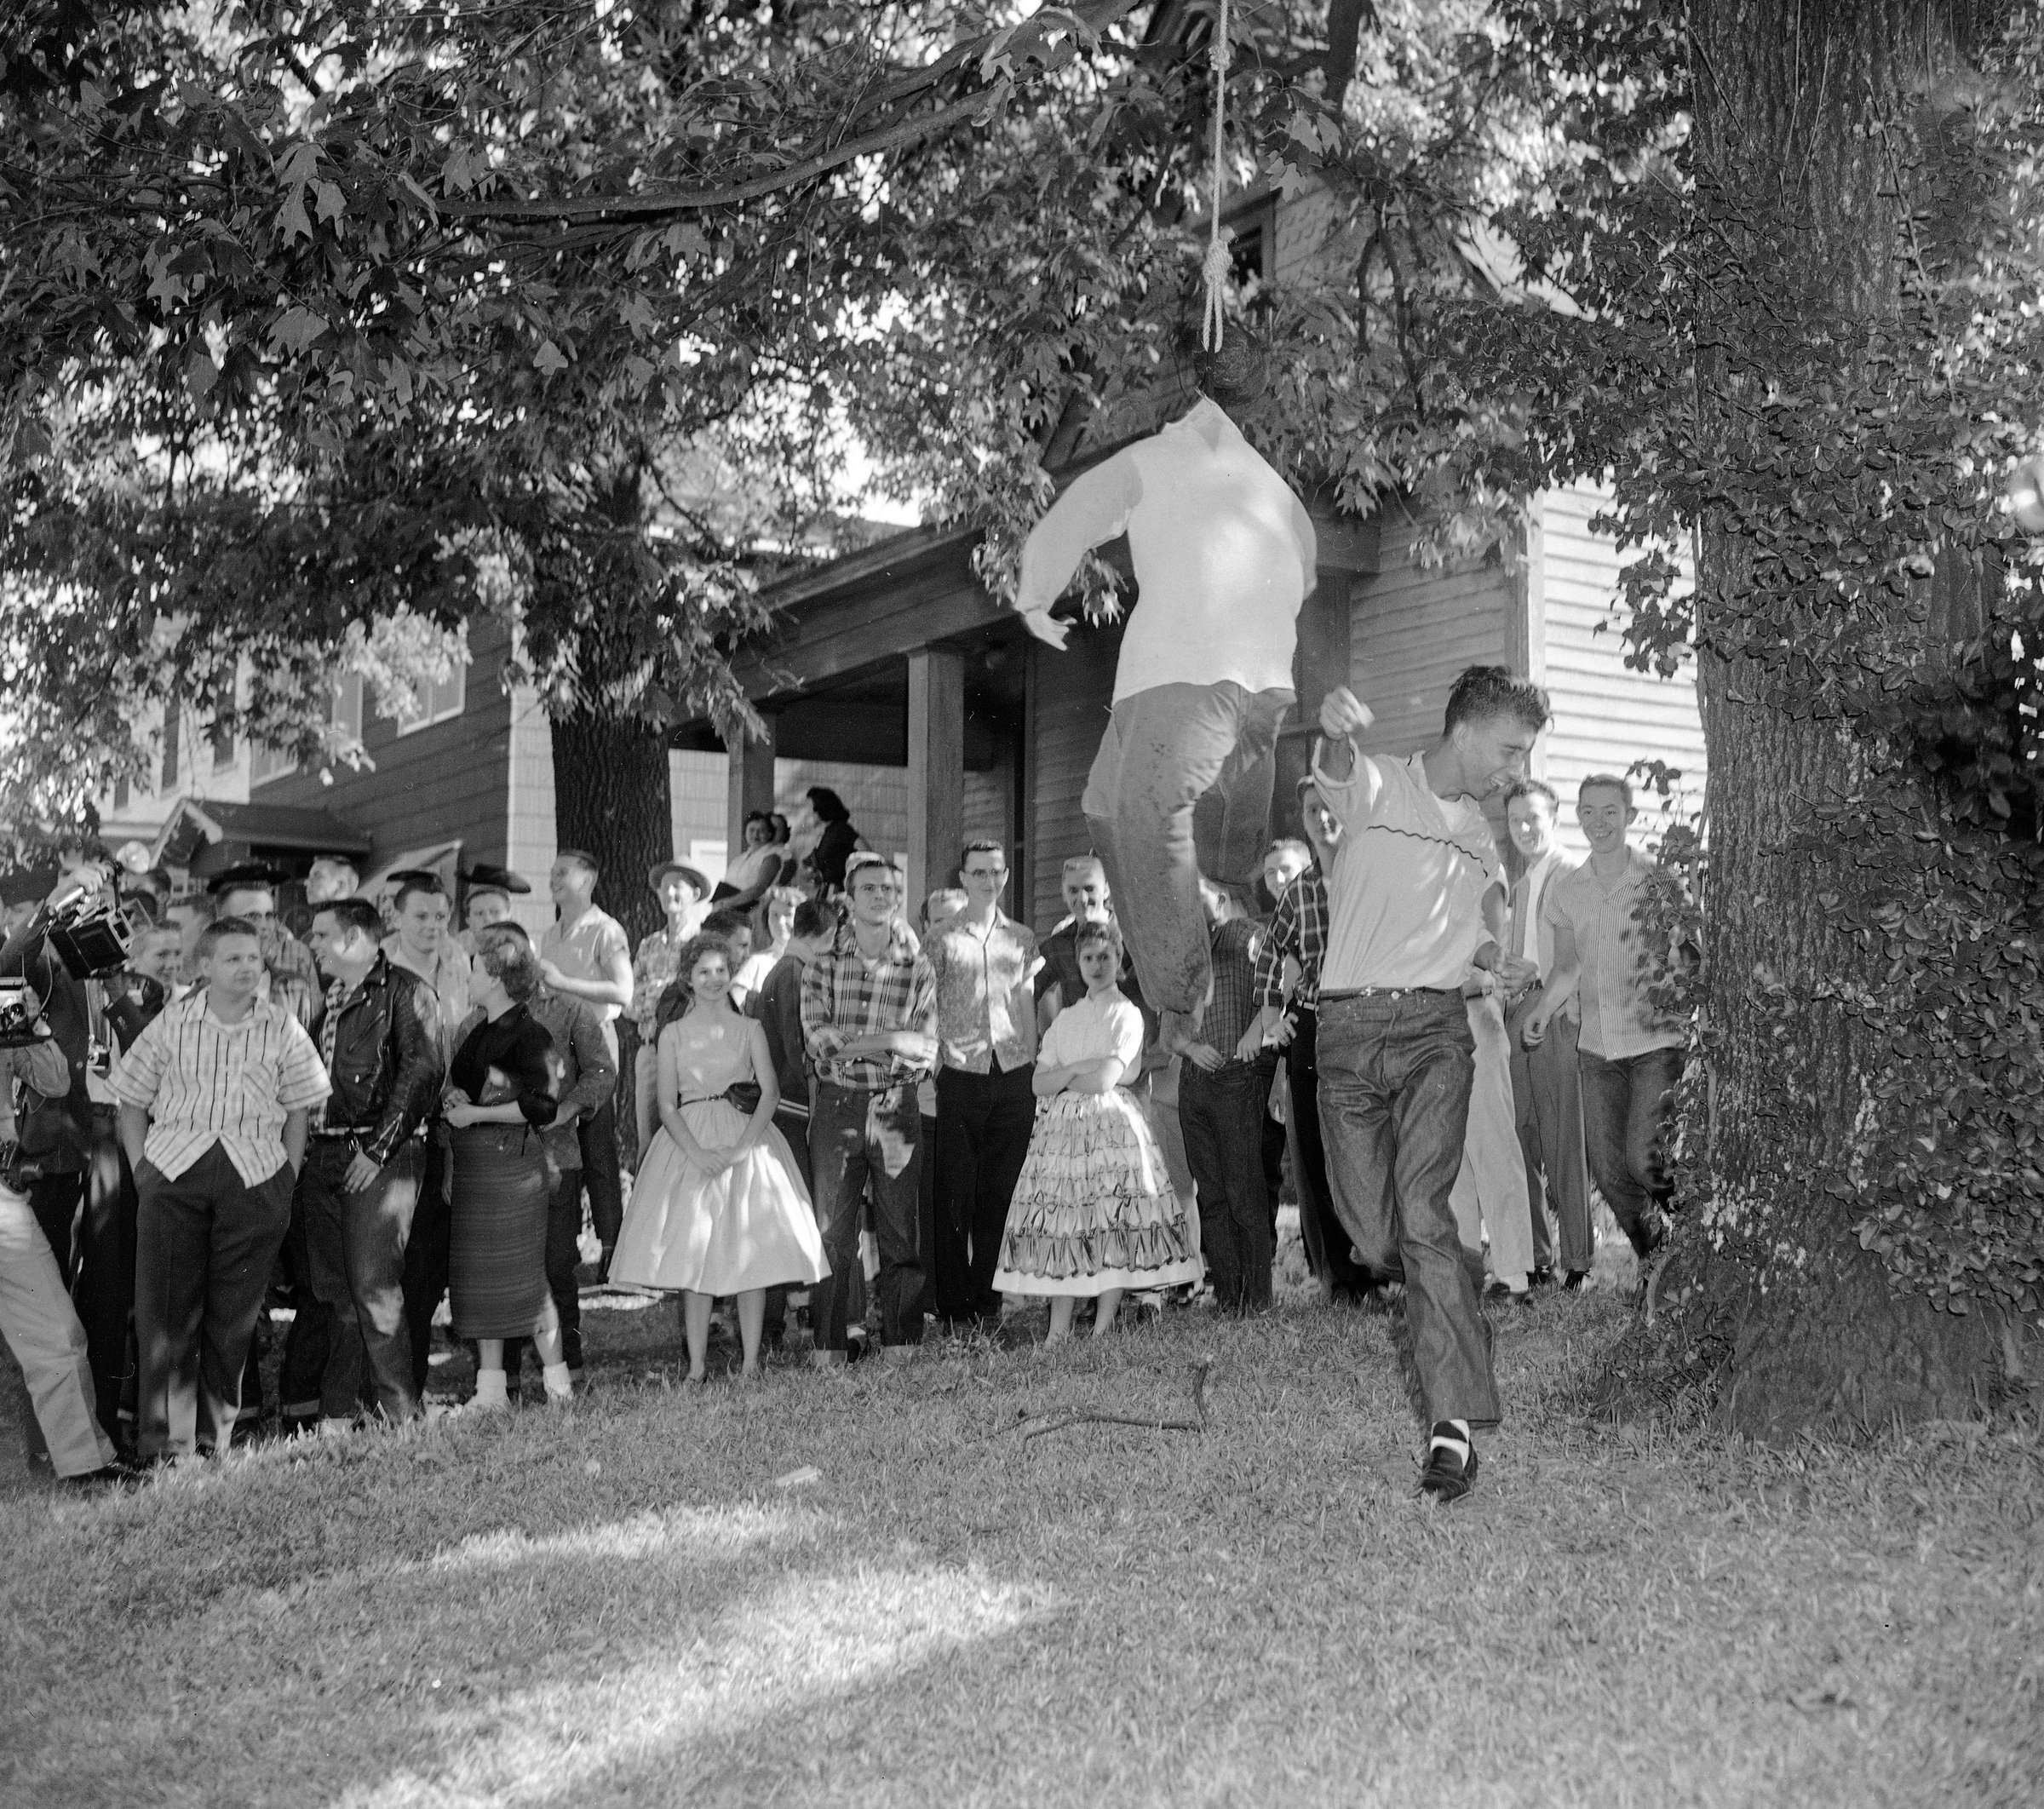 Подросток за пределами Центральной школы Литл-Рока бьет чучело, изображающее чернокожего школьника. В октябре 1957 года около 75 учеников этой школы вышли на демонстрацию&nbsp;протеста против совместного обучения с чернокожими.
